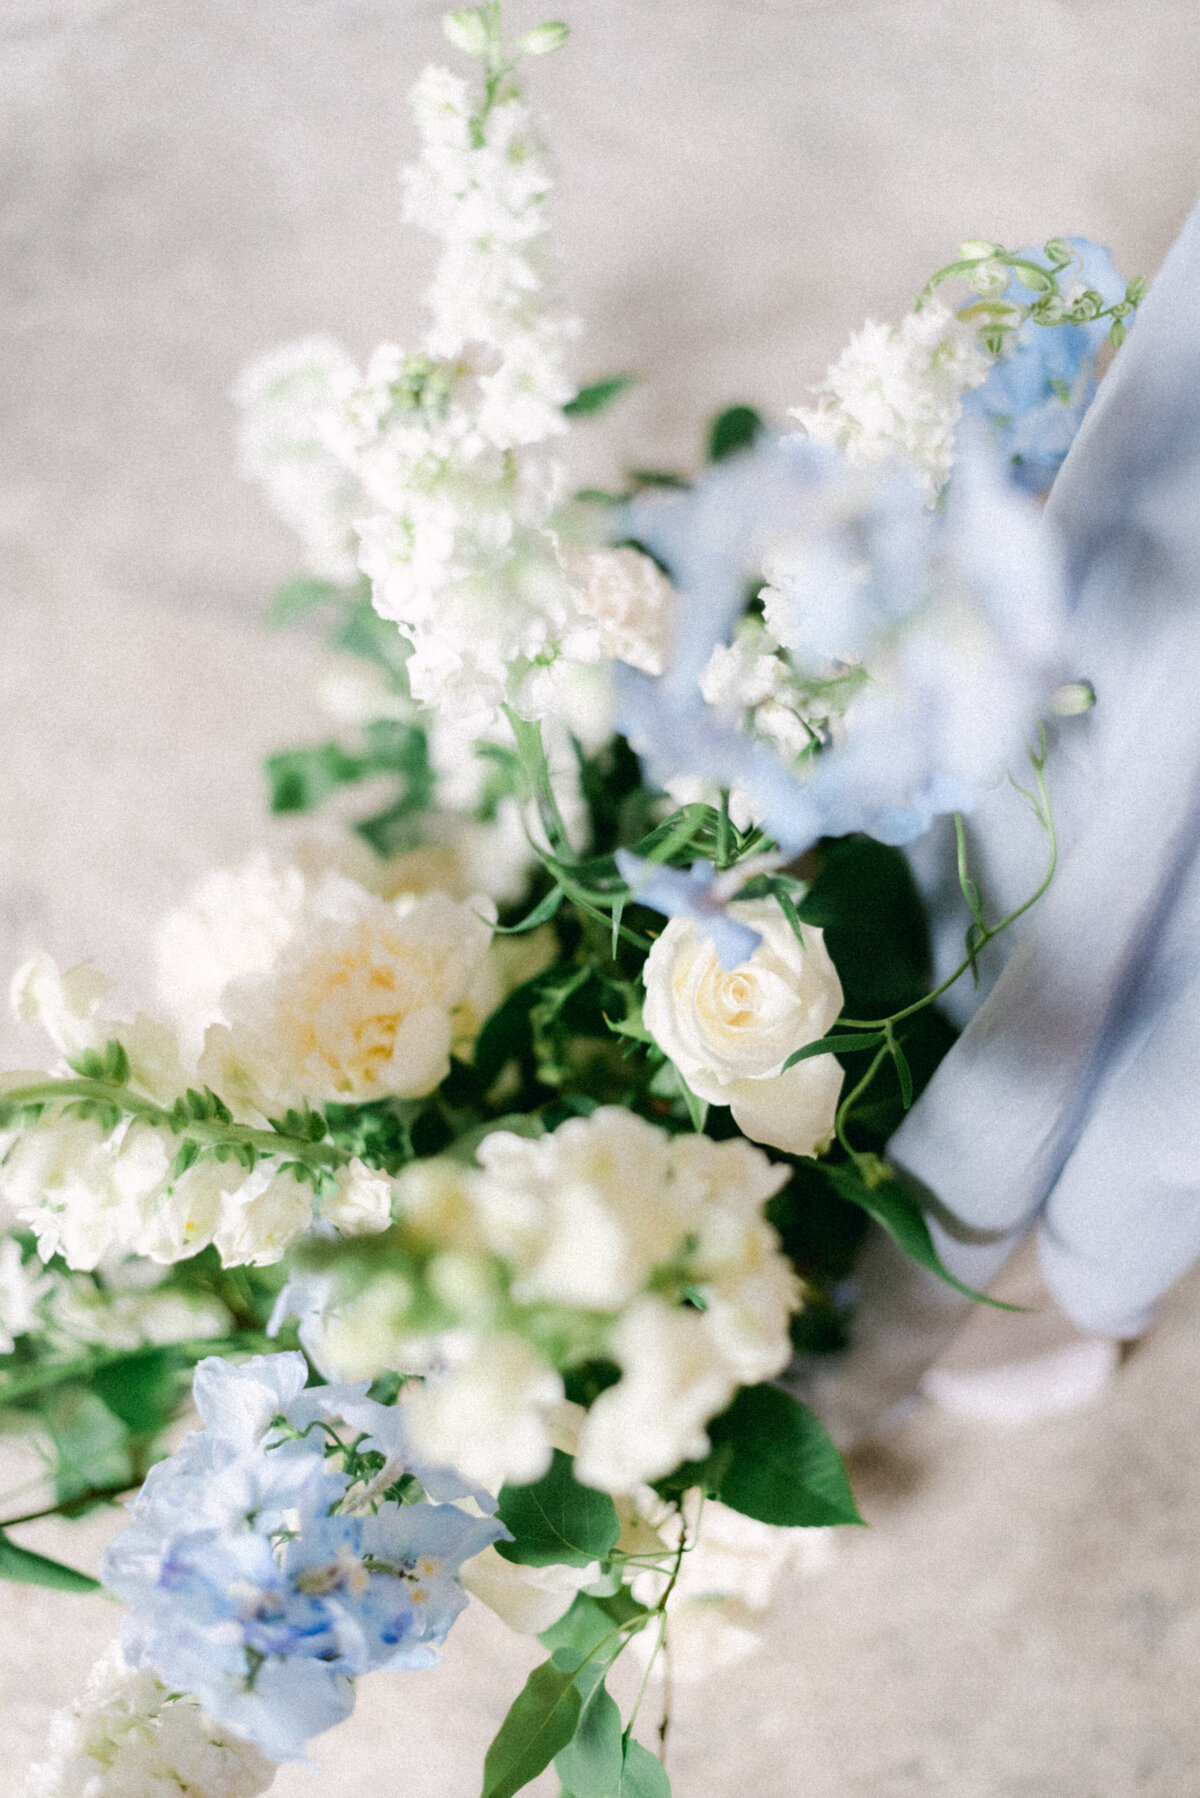 Wedding florals in an image captured by wedding photographer Hannika Gabrielsson.